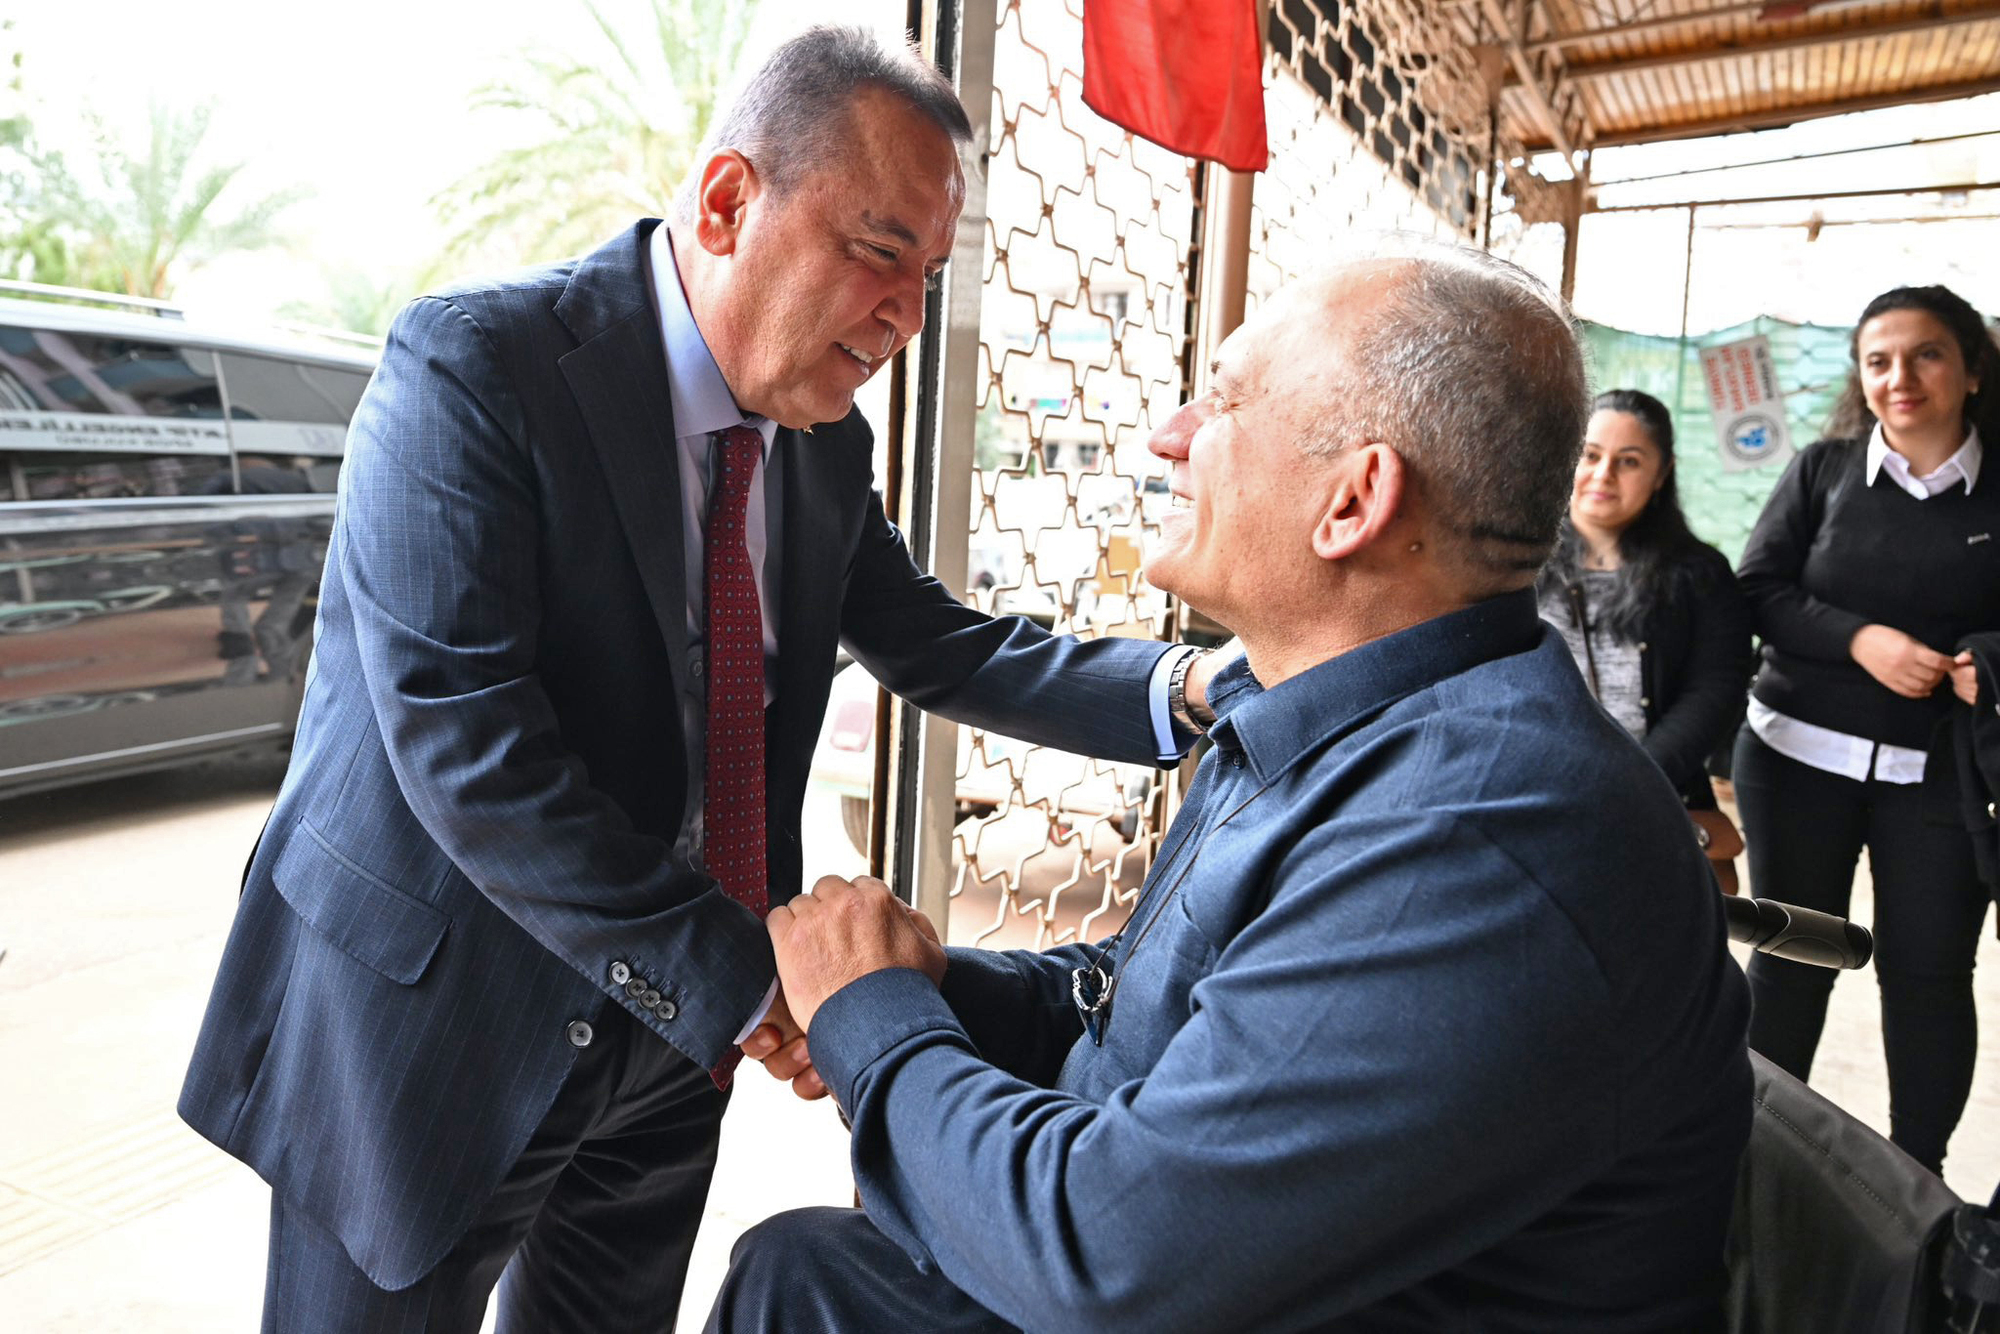 Başkan Muhittin Böcek Türkiye Sakatlar Derneği'ni ziyaret etti